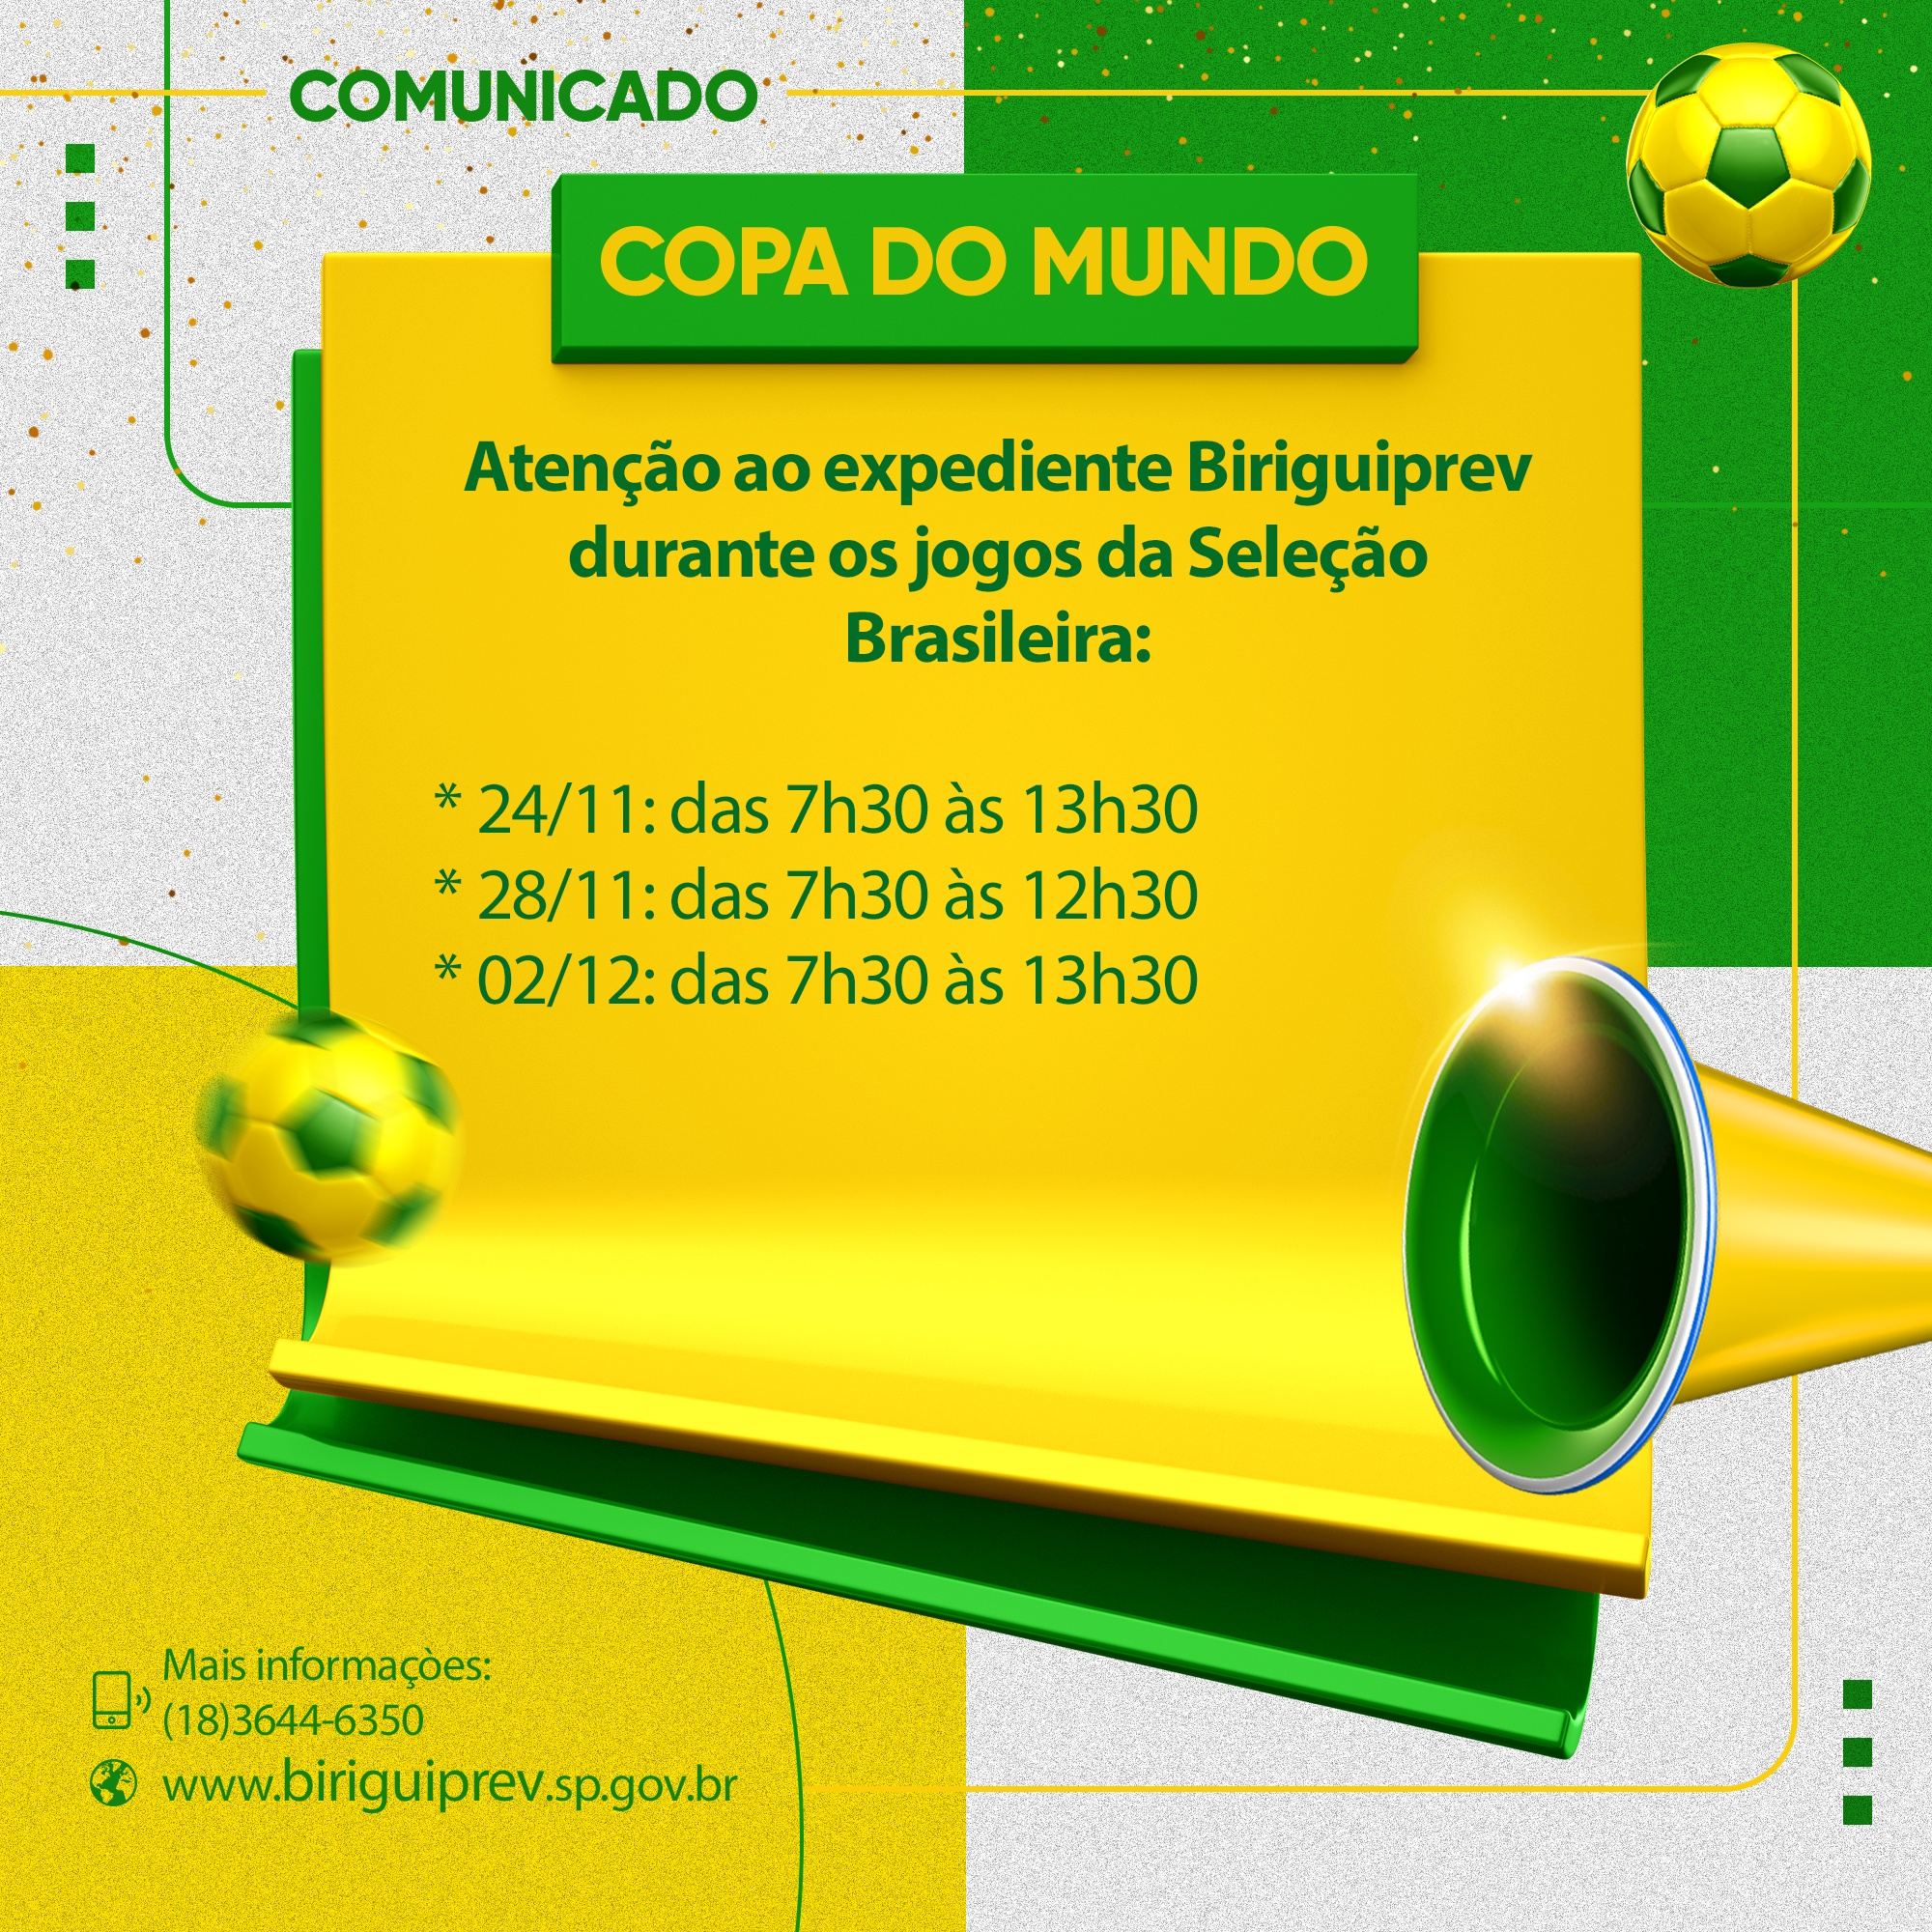 expediente biriguiprev durante jogos seleção brasileira